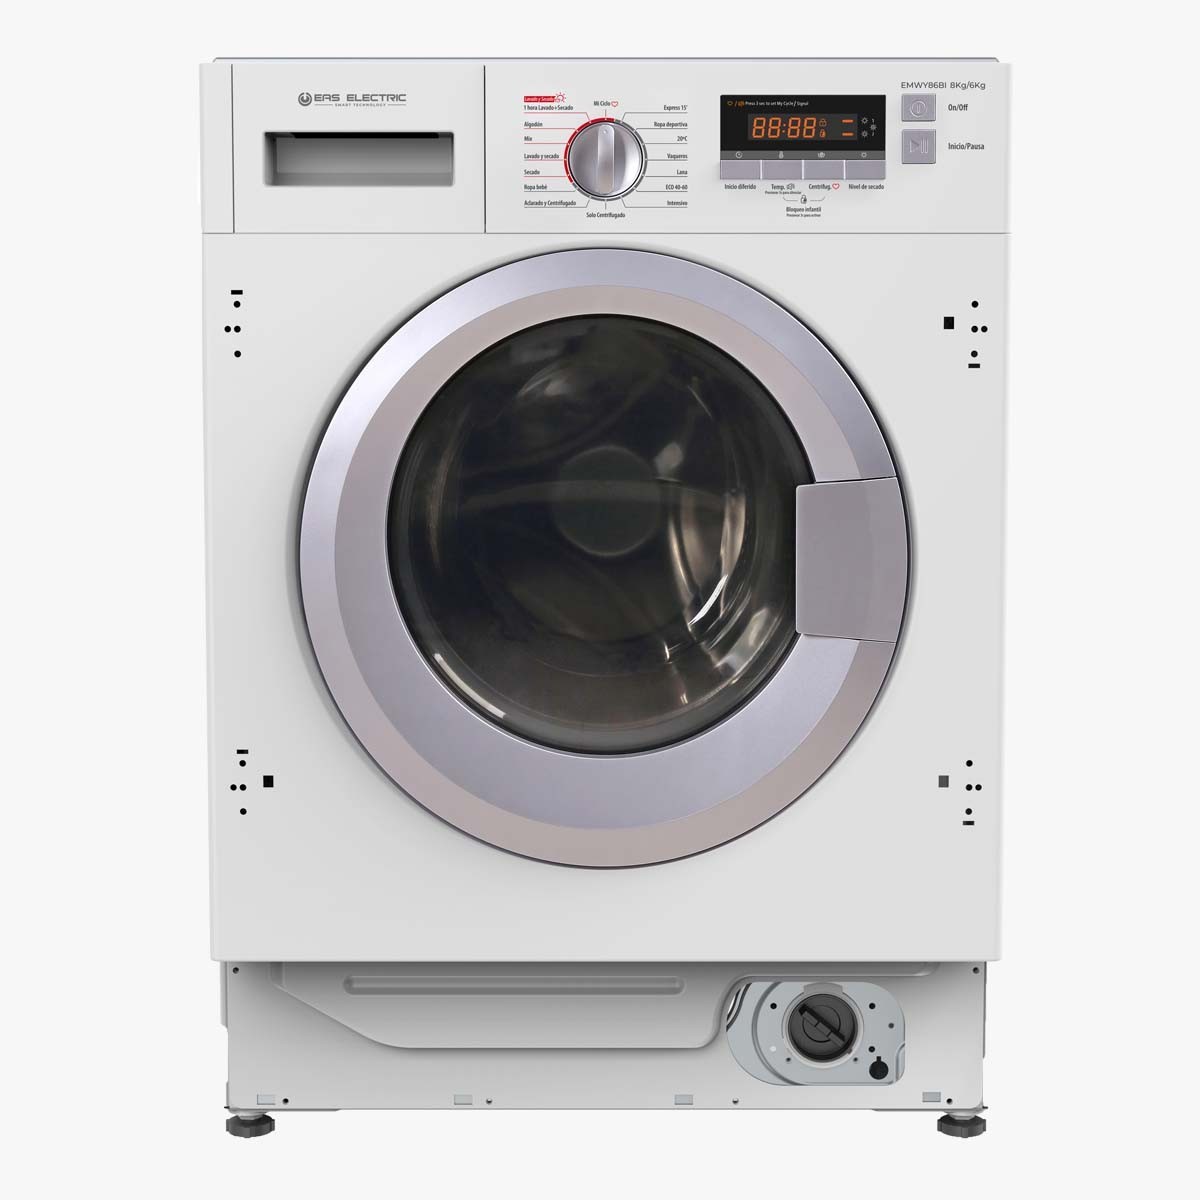 EVVO Lavadora-secadora integrable i8w6se - 8 Kg lavado/ 6 Kg